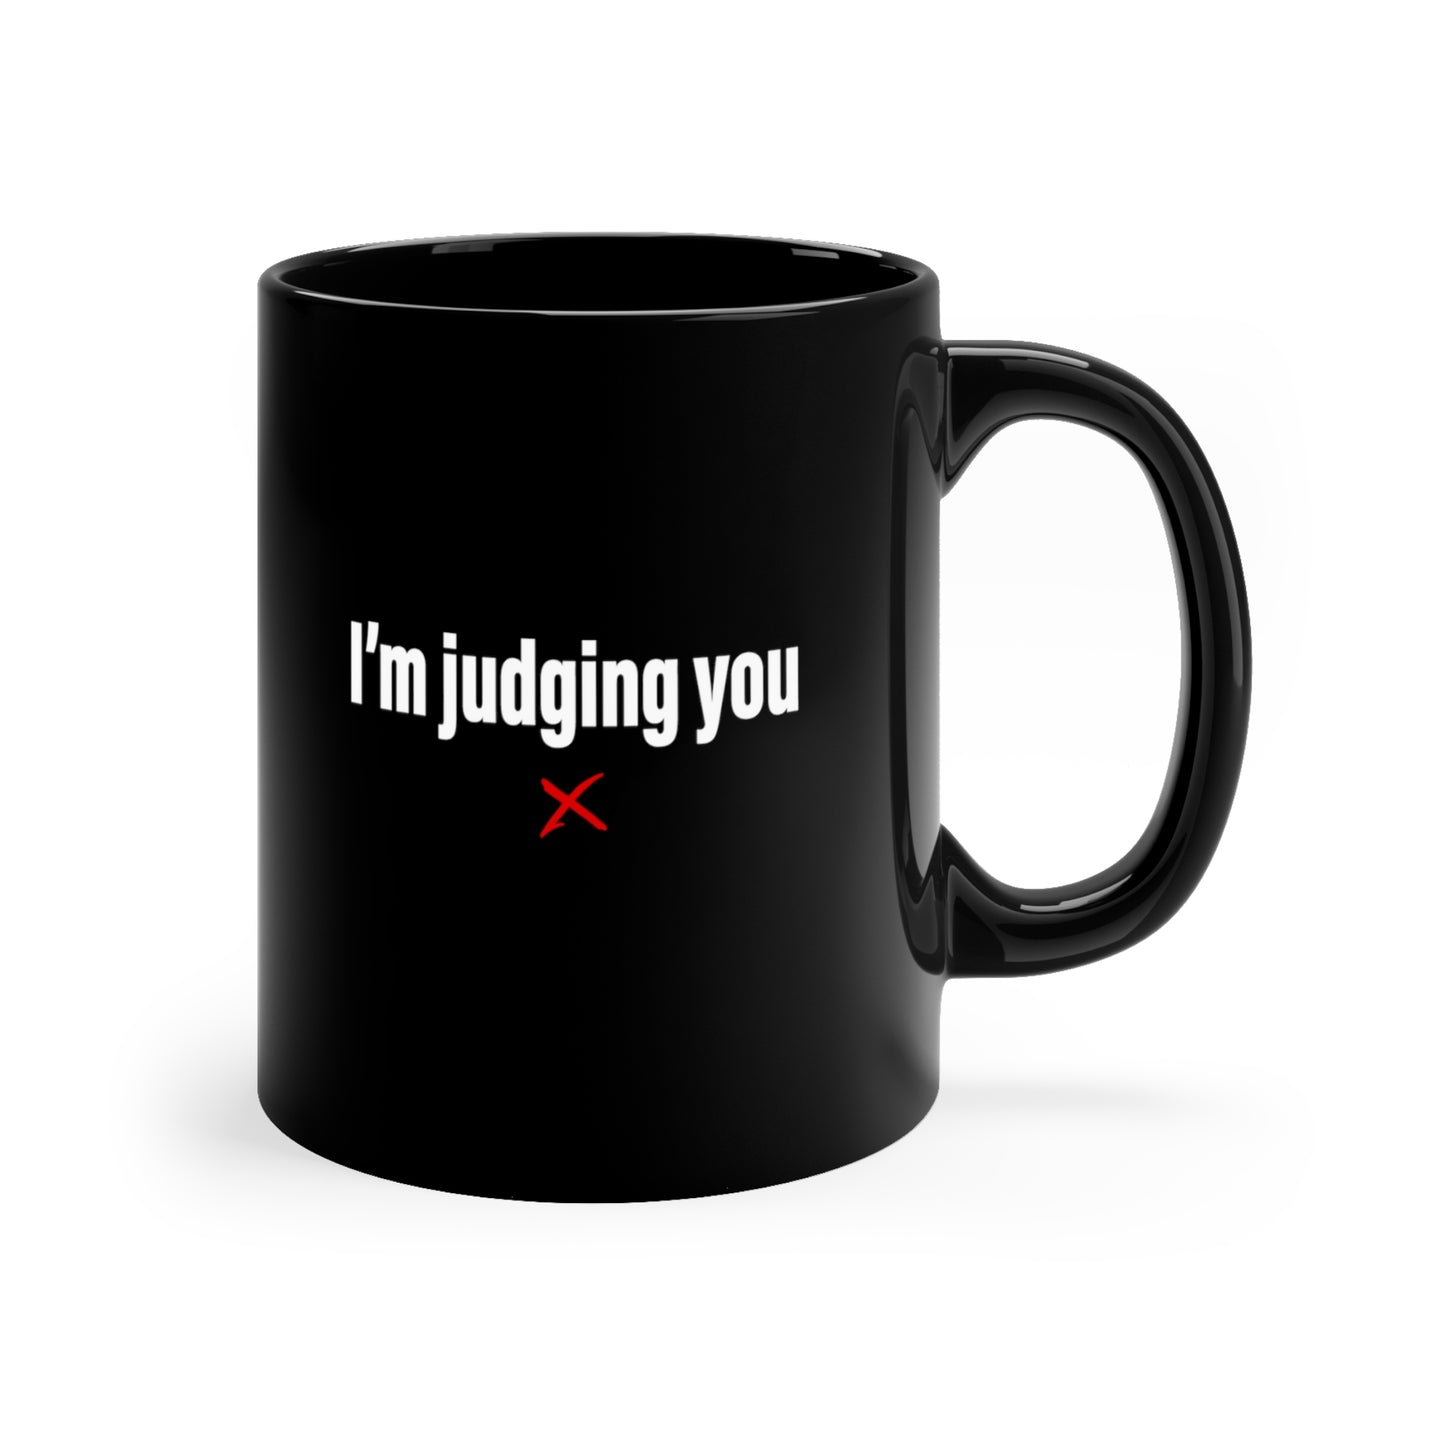 I'm judging you - Mug